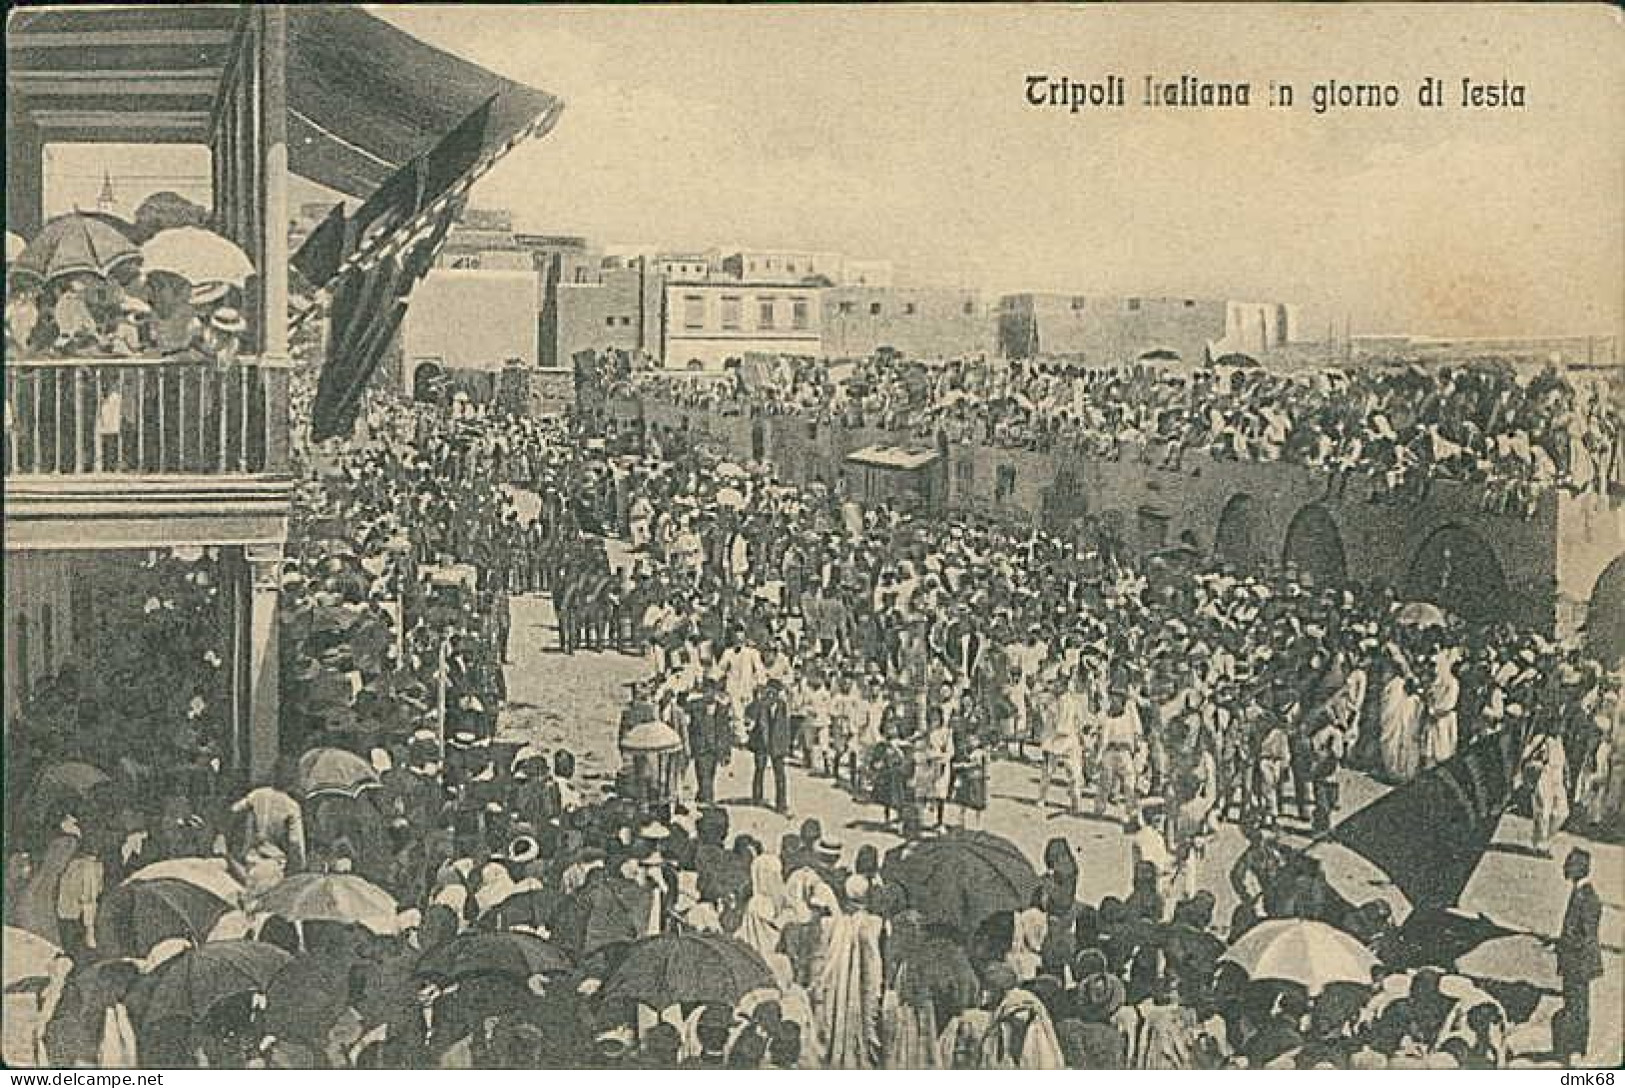 LIBIA / LIBYA - TRIPOLI ITALIANA IN GIORNO DI FESTA - ED. ALTEROCCA 1910s (12456) - Libya